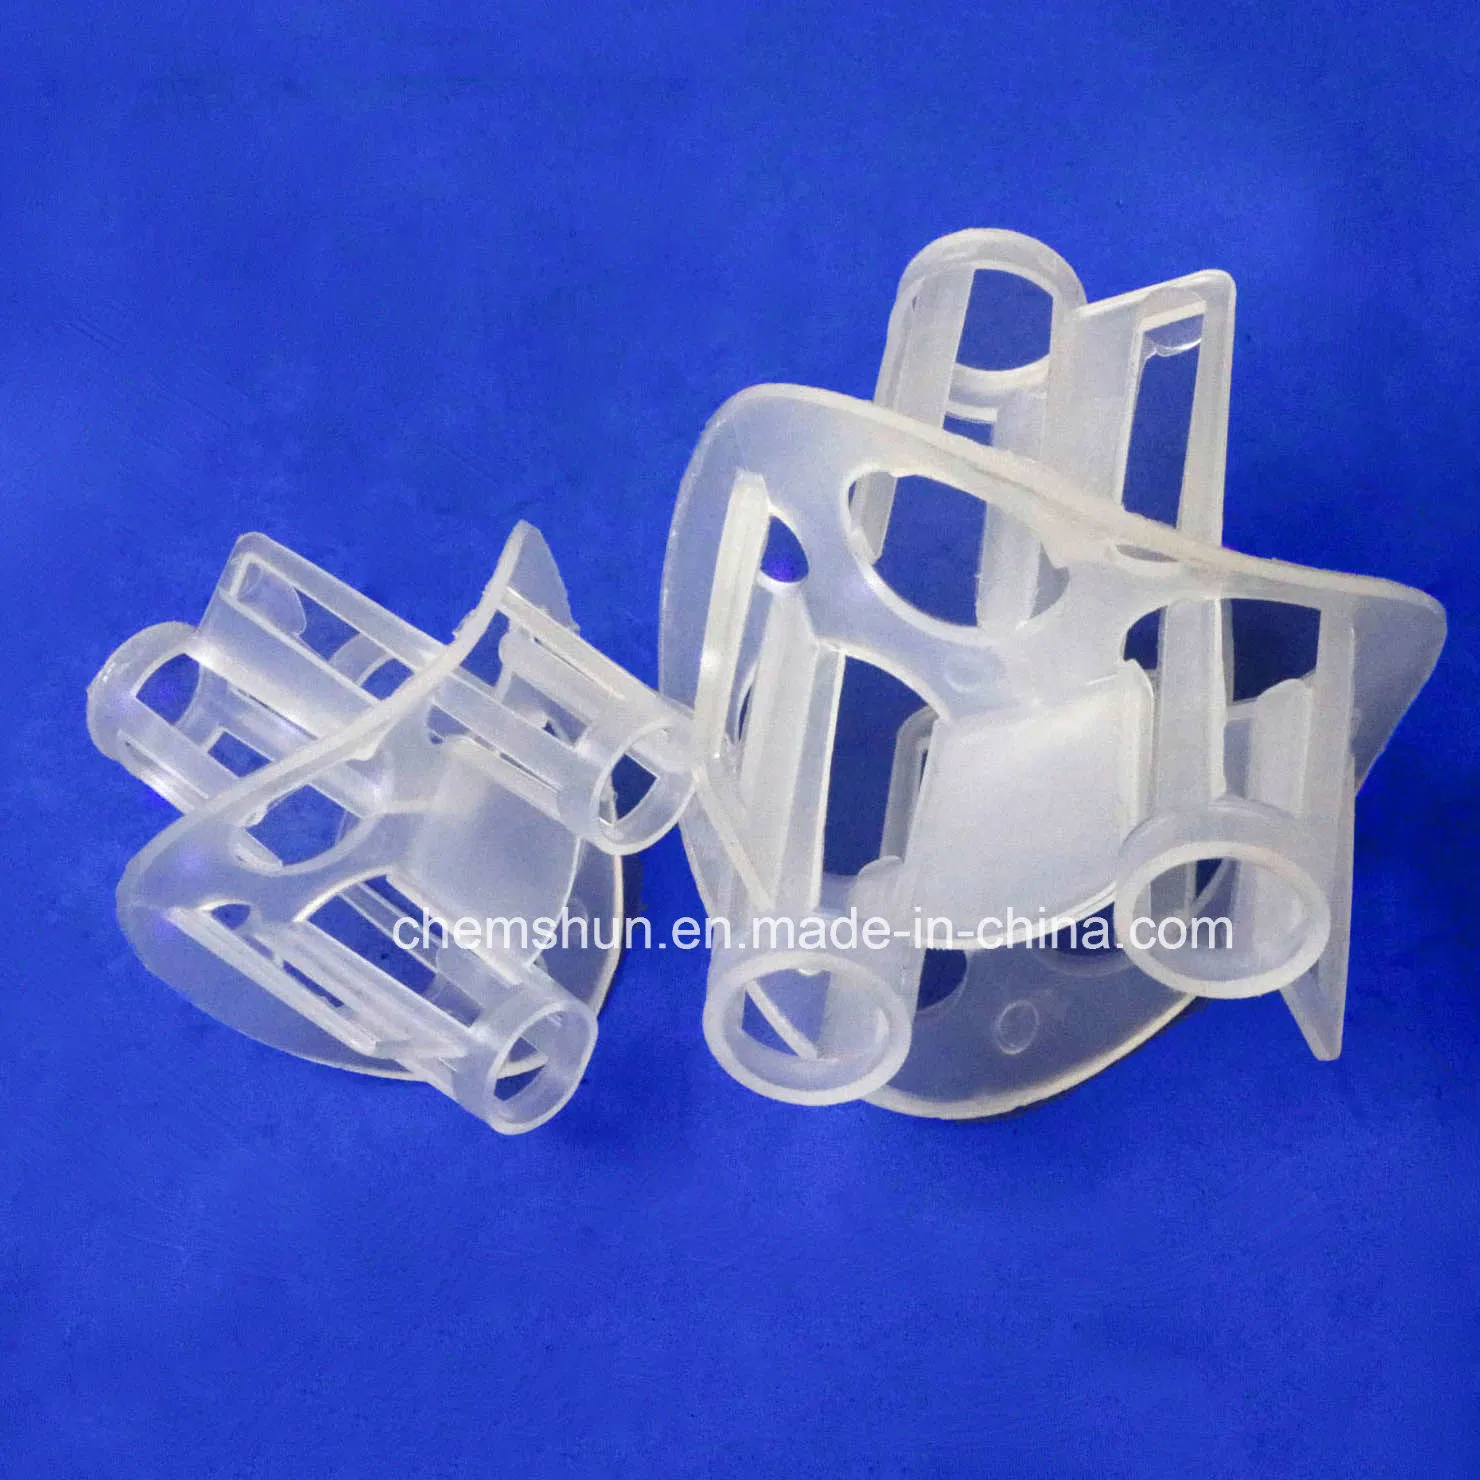 حلقات هيلكس البلاستيكية كتجميع لبرج الامتزاز